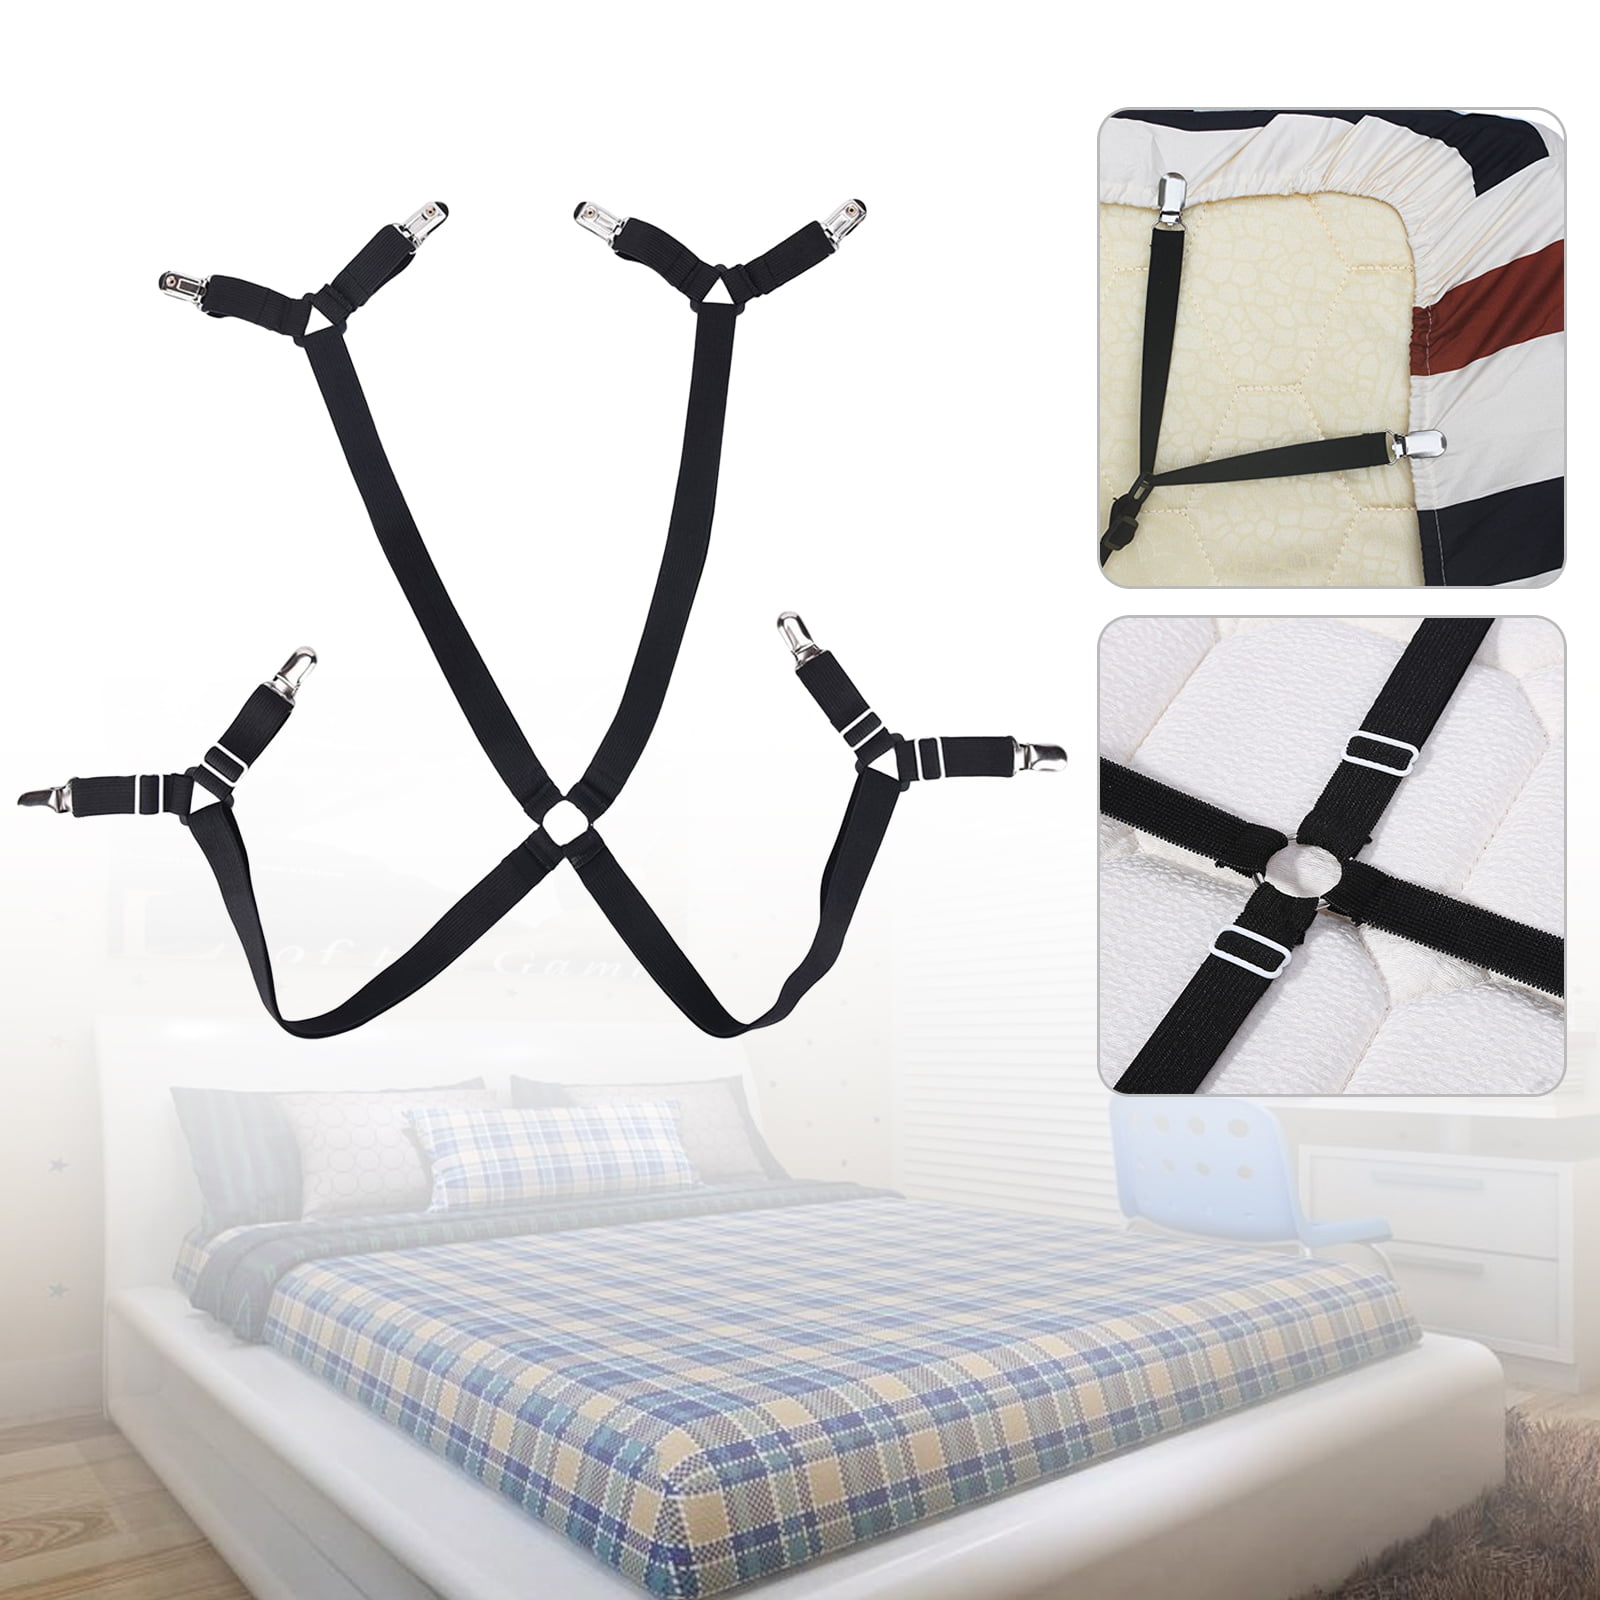 Adjustable Bed Fitted Elastic Sheet Straps Suspenders Gripper Holder Fastener 4x 